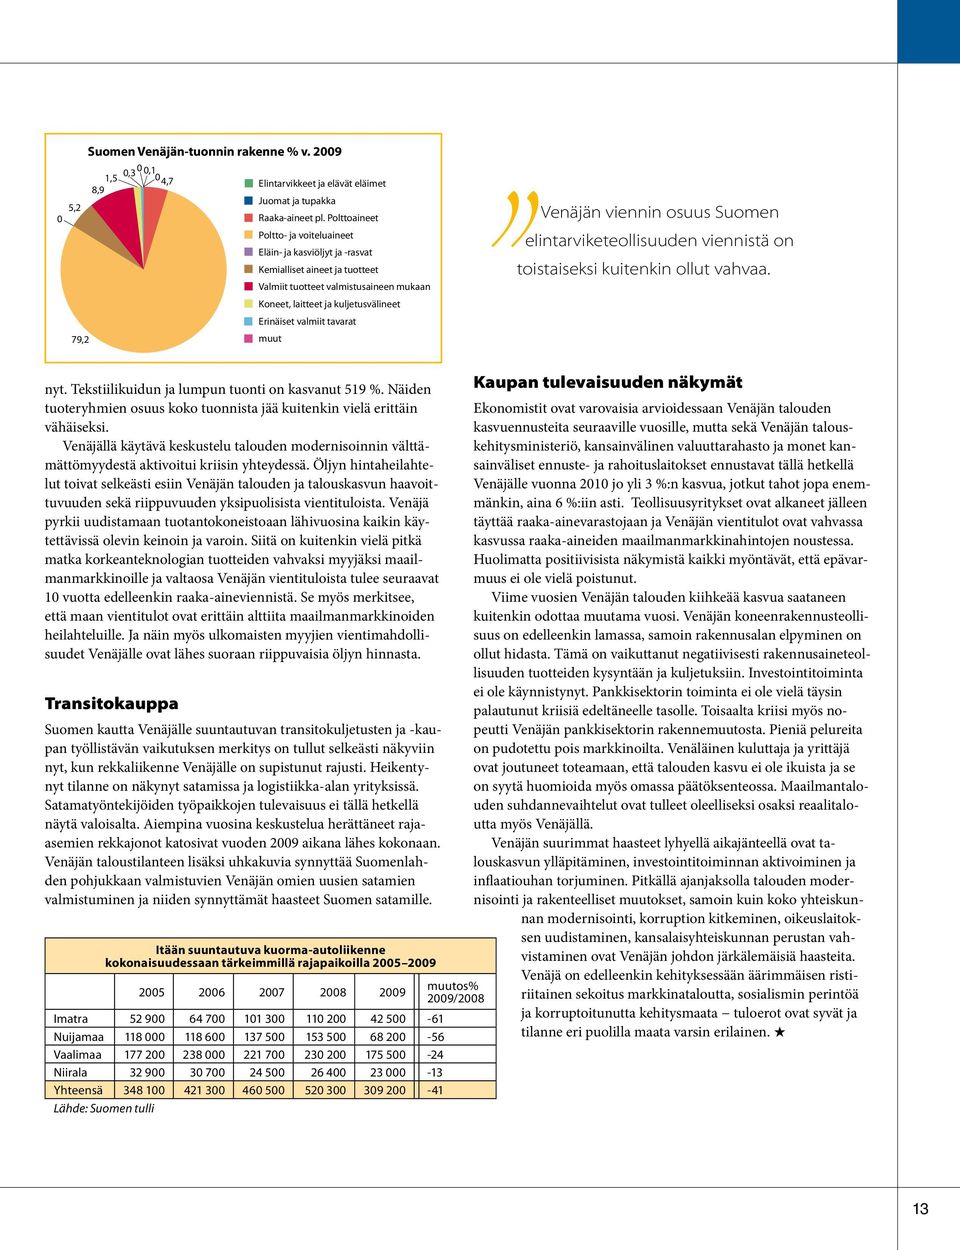 tavarat 79,2 muut Venäjän viennin osuus Suomen elintarviketeollisuuden viennistä on toistaiseksi kuitenkin ollut vahvaa. nyt. Tekstiilikuidun ja lumpun tuonti on kasvanut 519 %.